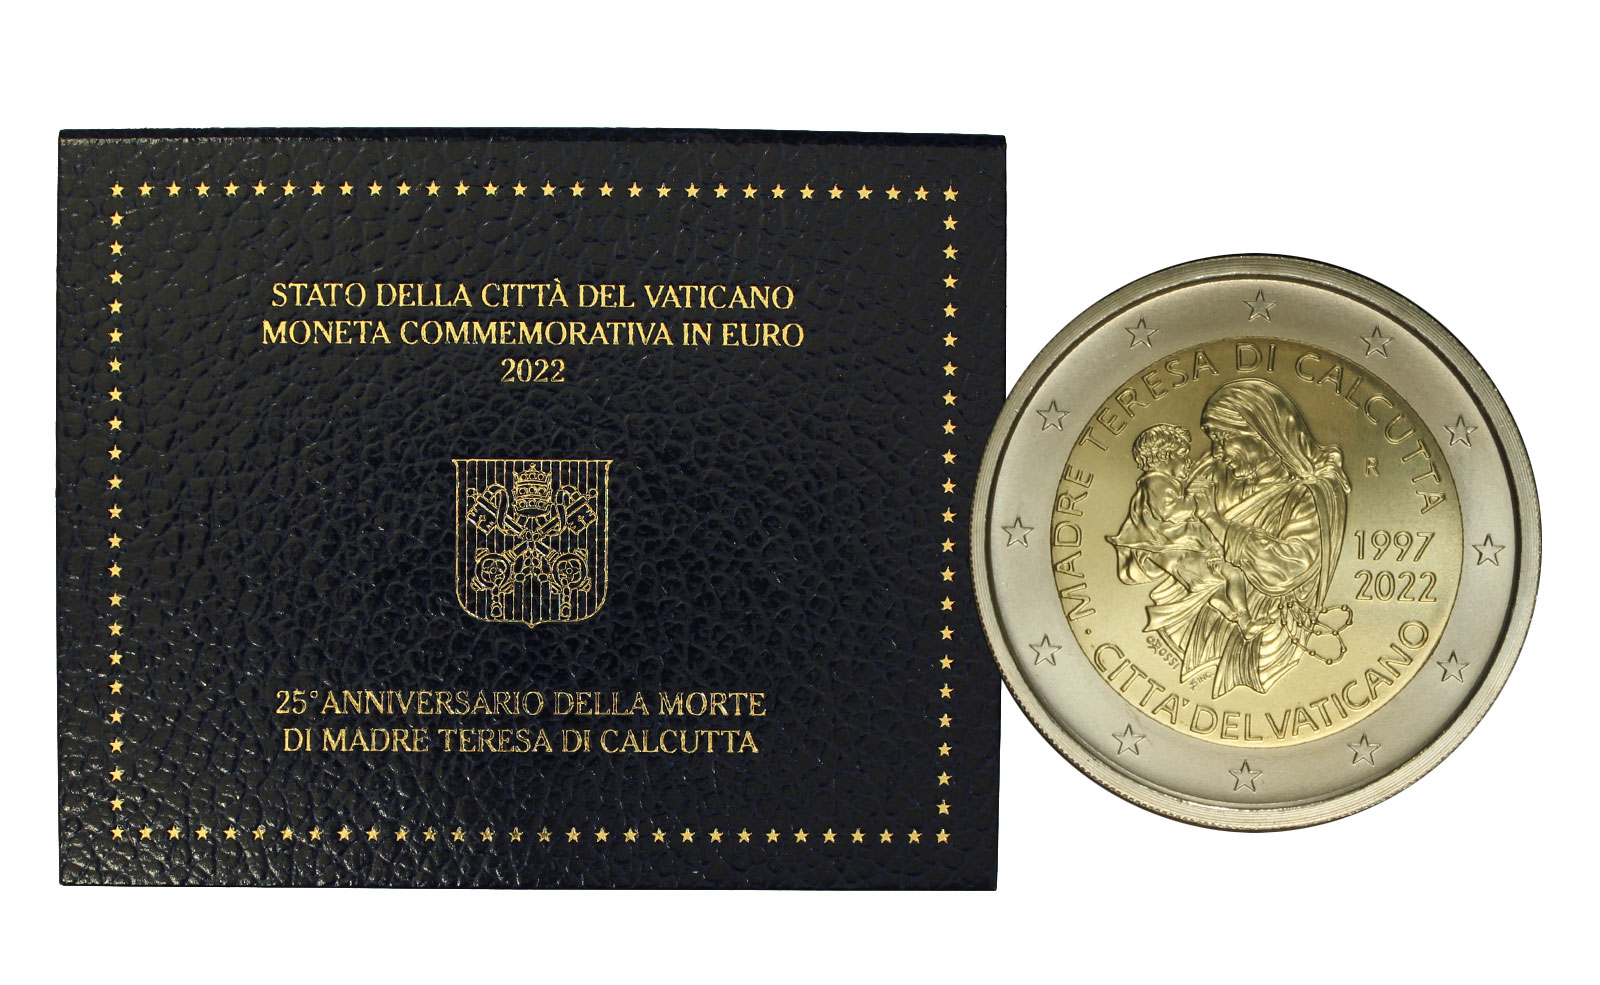  Madre Teresa di Calcutta - 2 Euro in confezione ufficiale